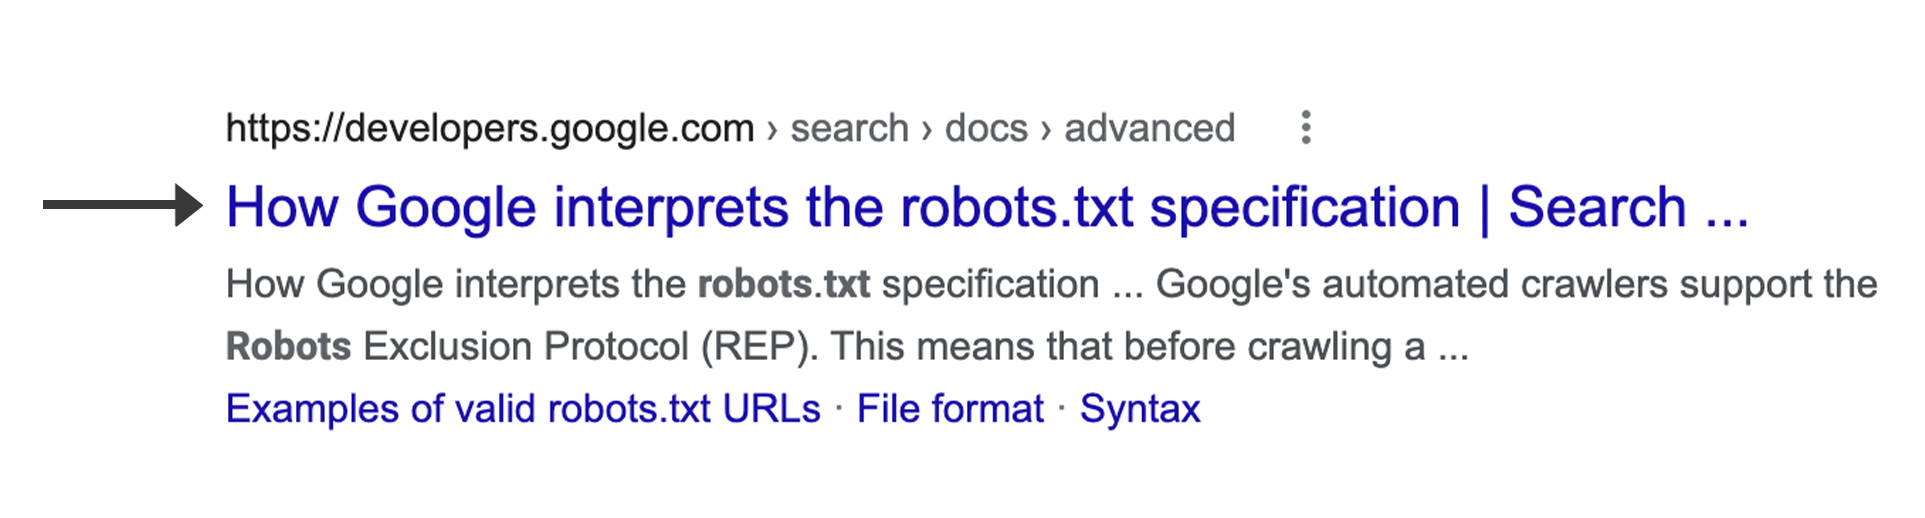 Title как заглавие результата запроса предоставляет пользователям лучшее понимание контента страницы, которая появилась в поиске. Google использует несколько различных источников для автоматического определения ссылки заголовка.